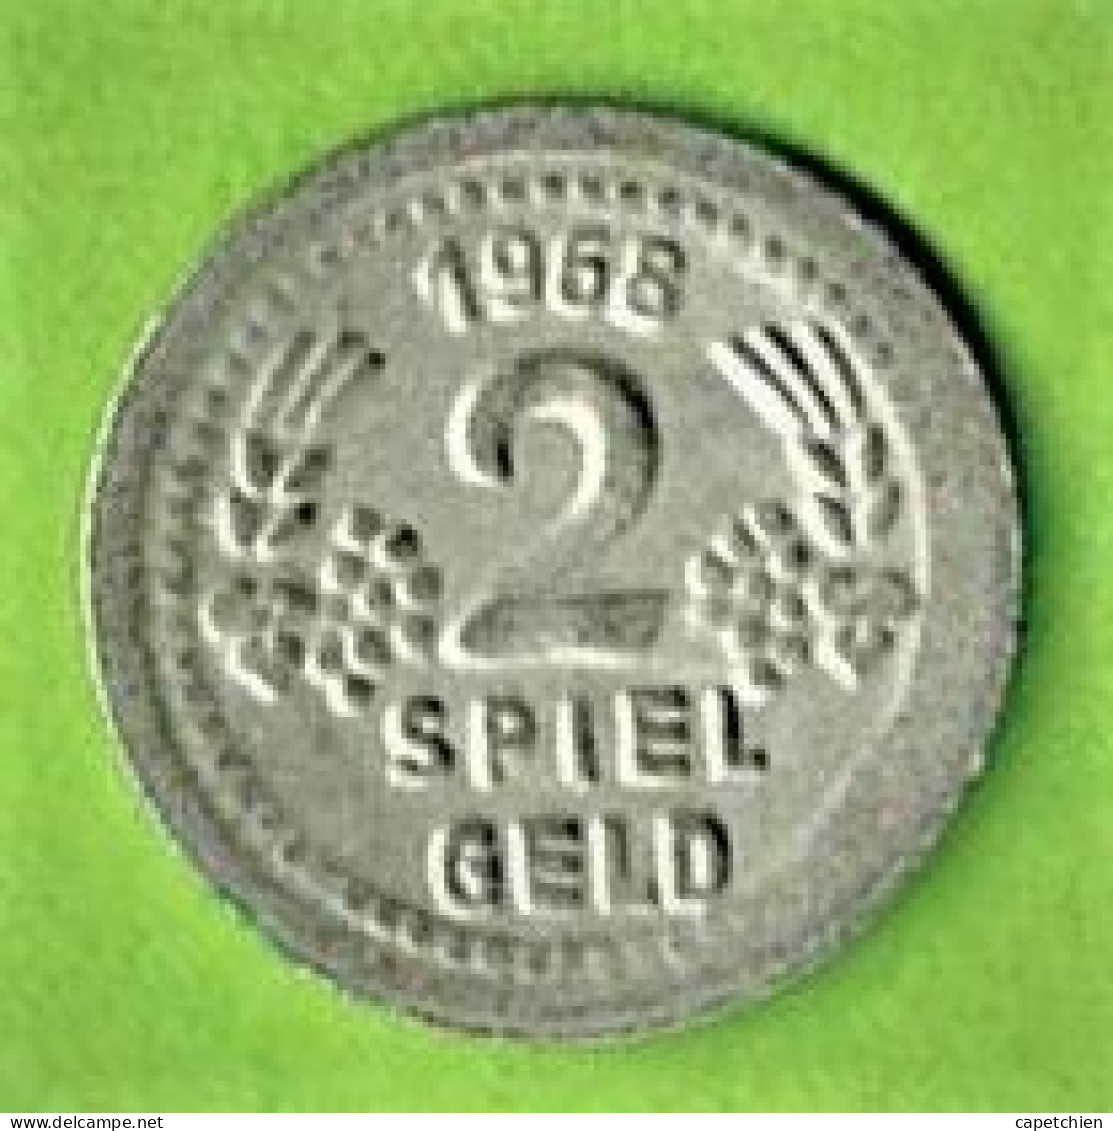 JETON / SPIEL GELD / 2 / 1968 / ACIER INOX / 1.03 G / 15 Mm - Casino